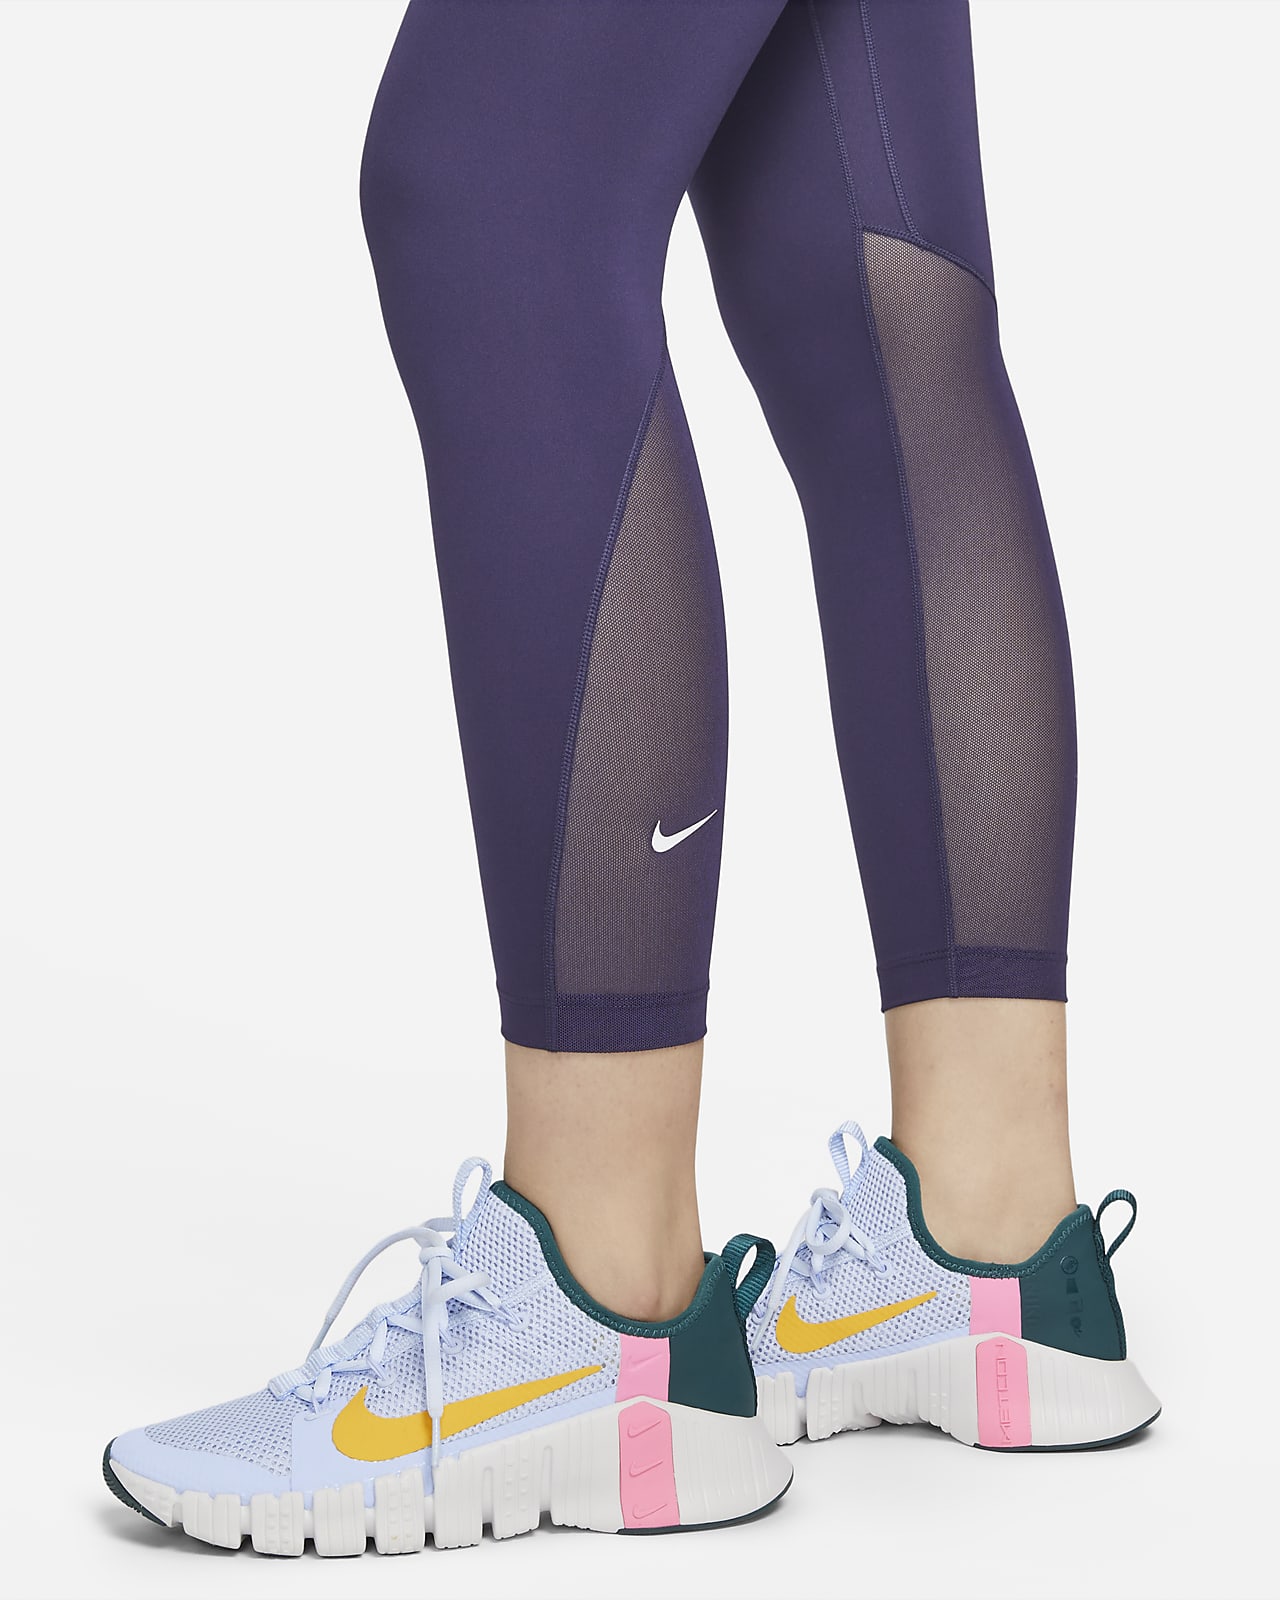 Women Nike Pro SE 7/8 Leggings Size M Medium Oil Green FN3162 386